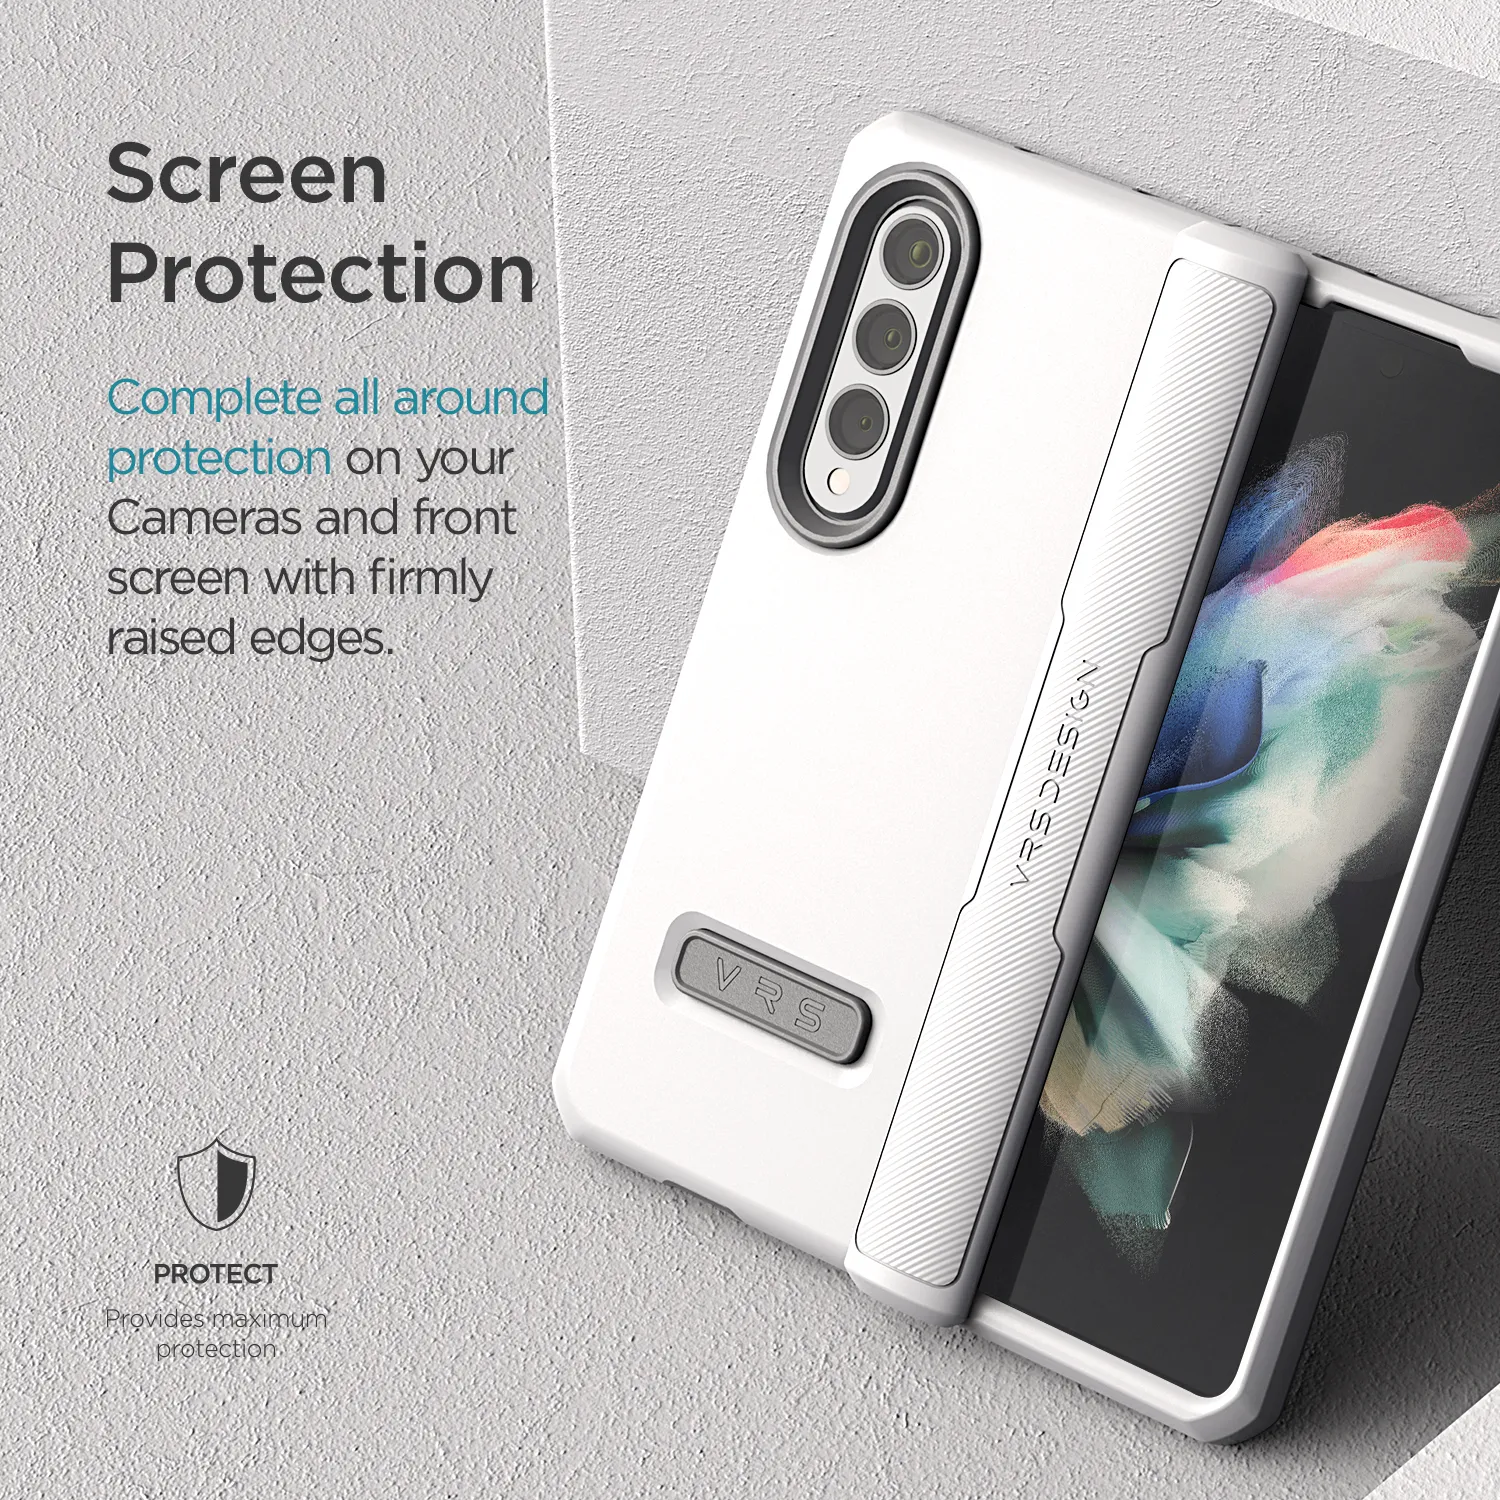 เคส VRS รุ่น Terra Guard Modern - Samsung Galaxy Z Fold 3 - สี White